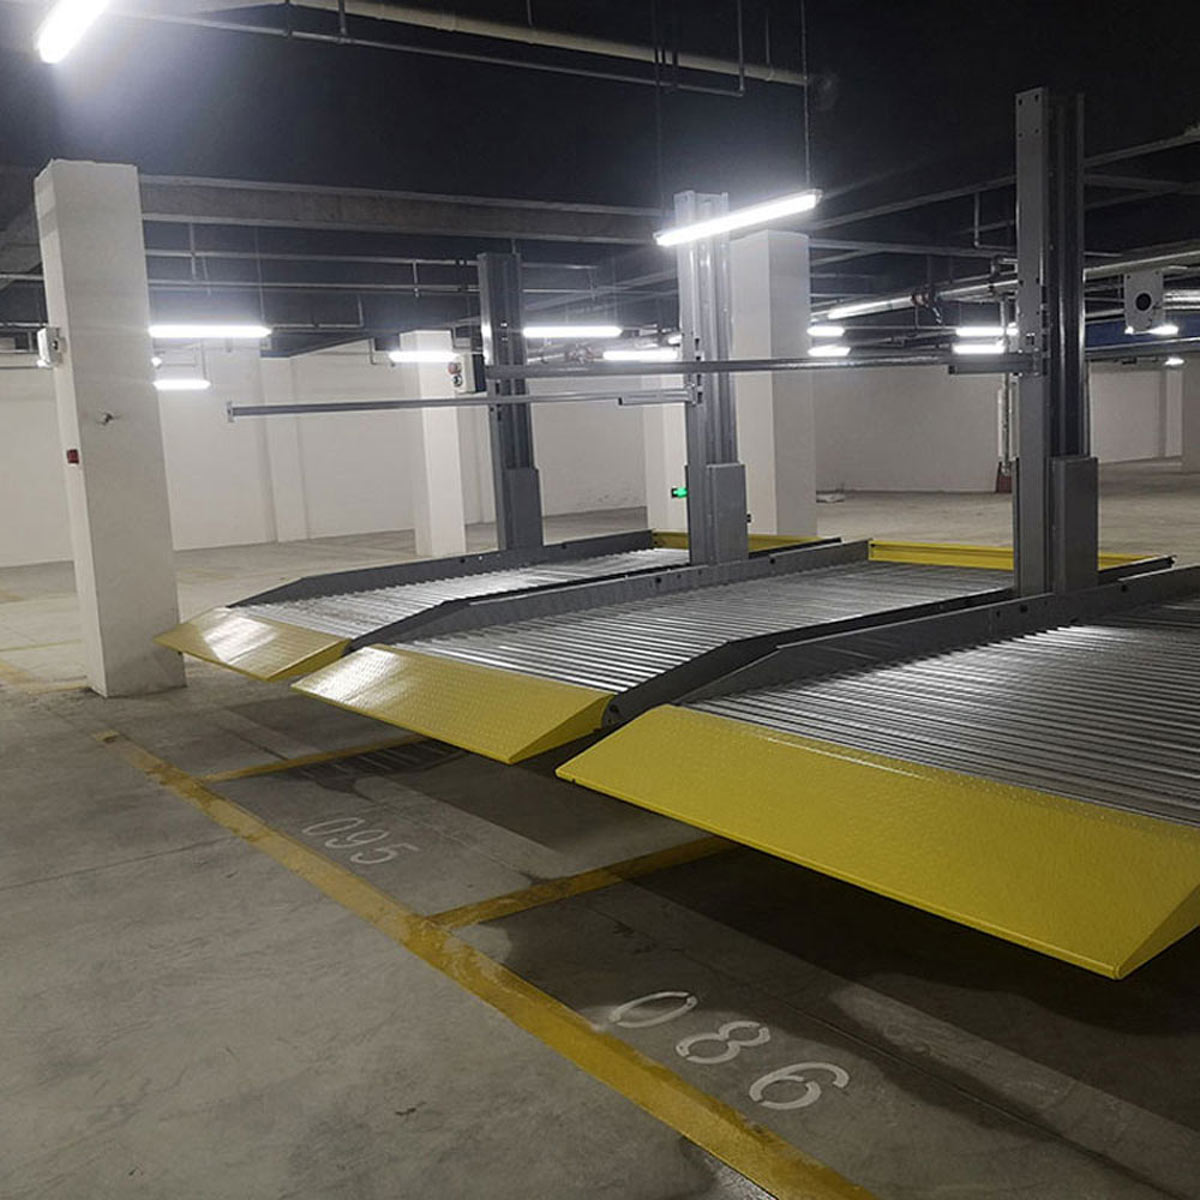 雙柏立體停車庫改善區域停車四種解決模式